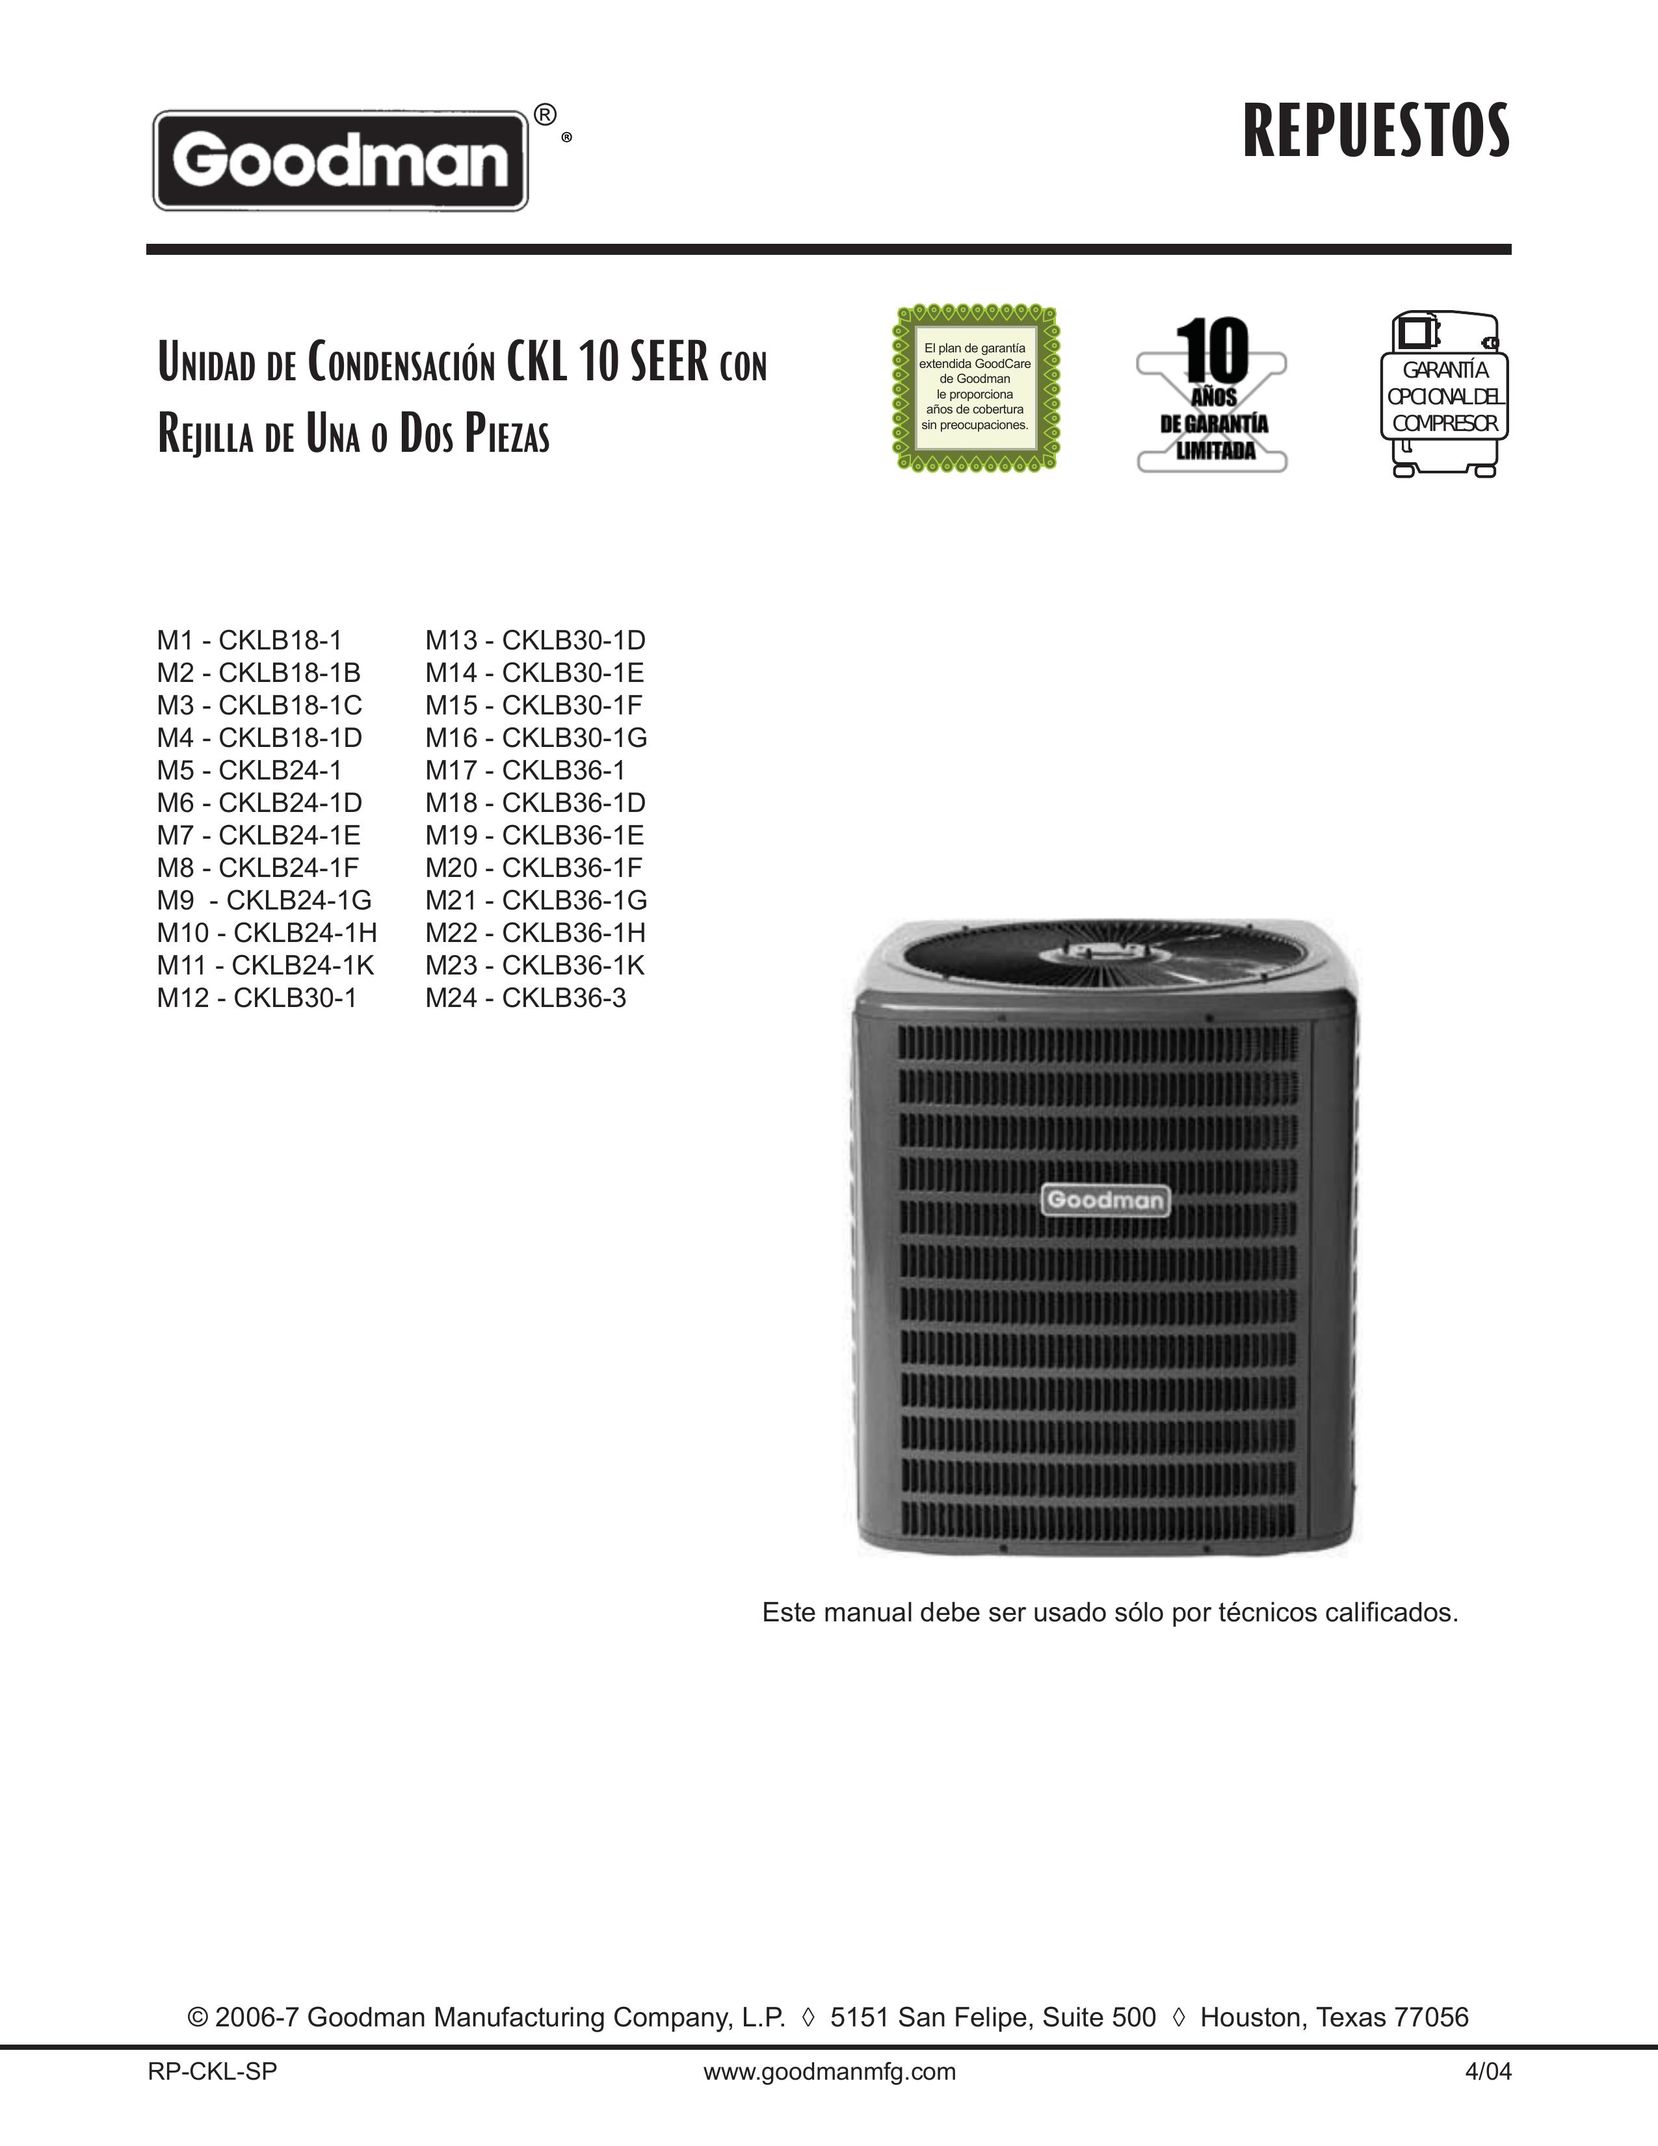 Goodman Mfg CKLB24-1 Air Conditioner User Manual